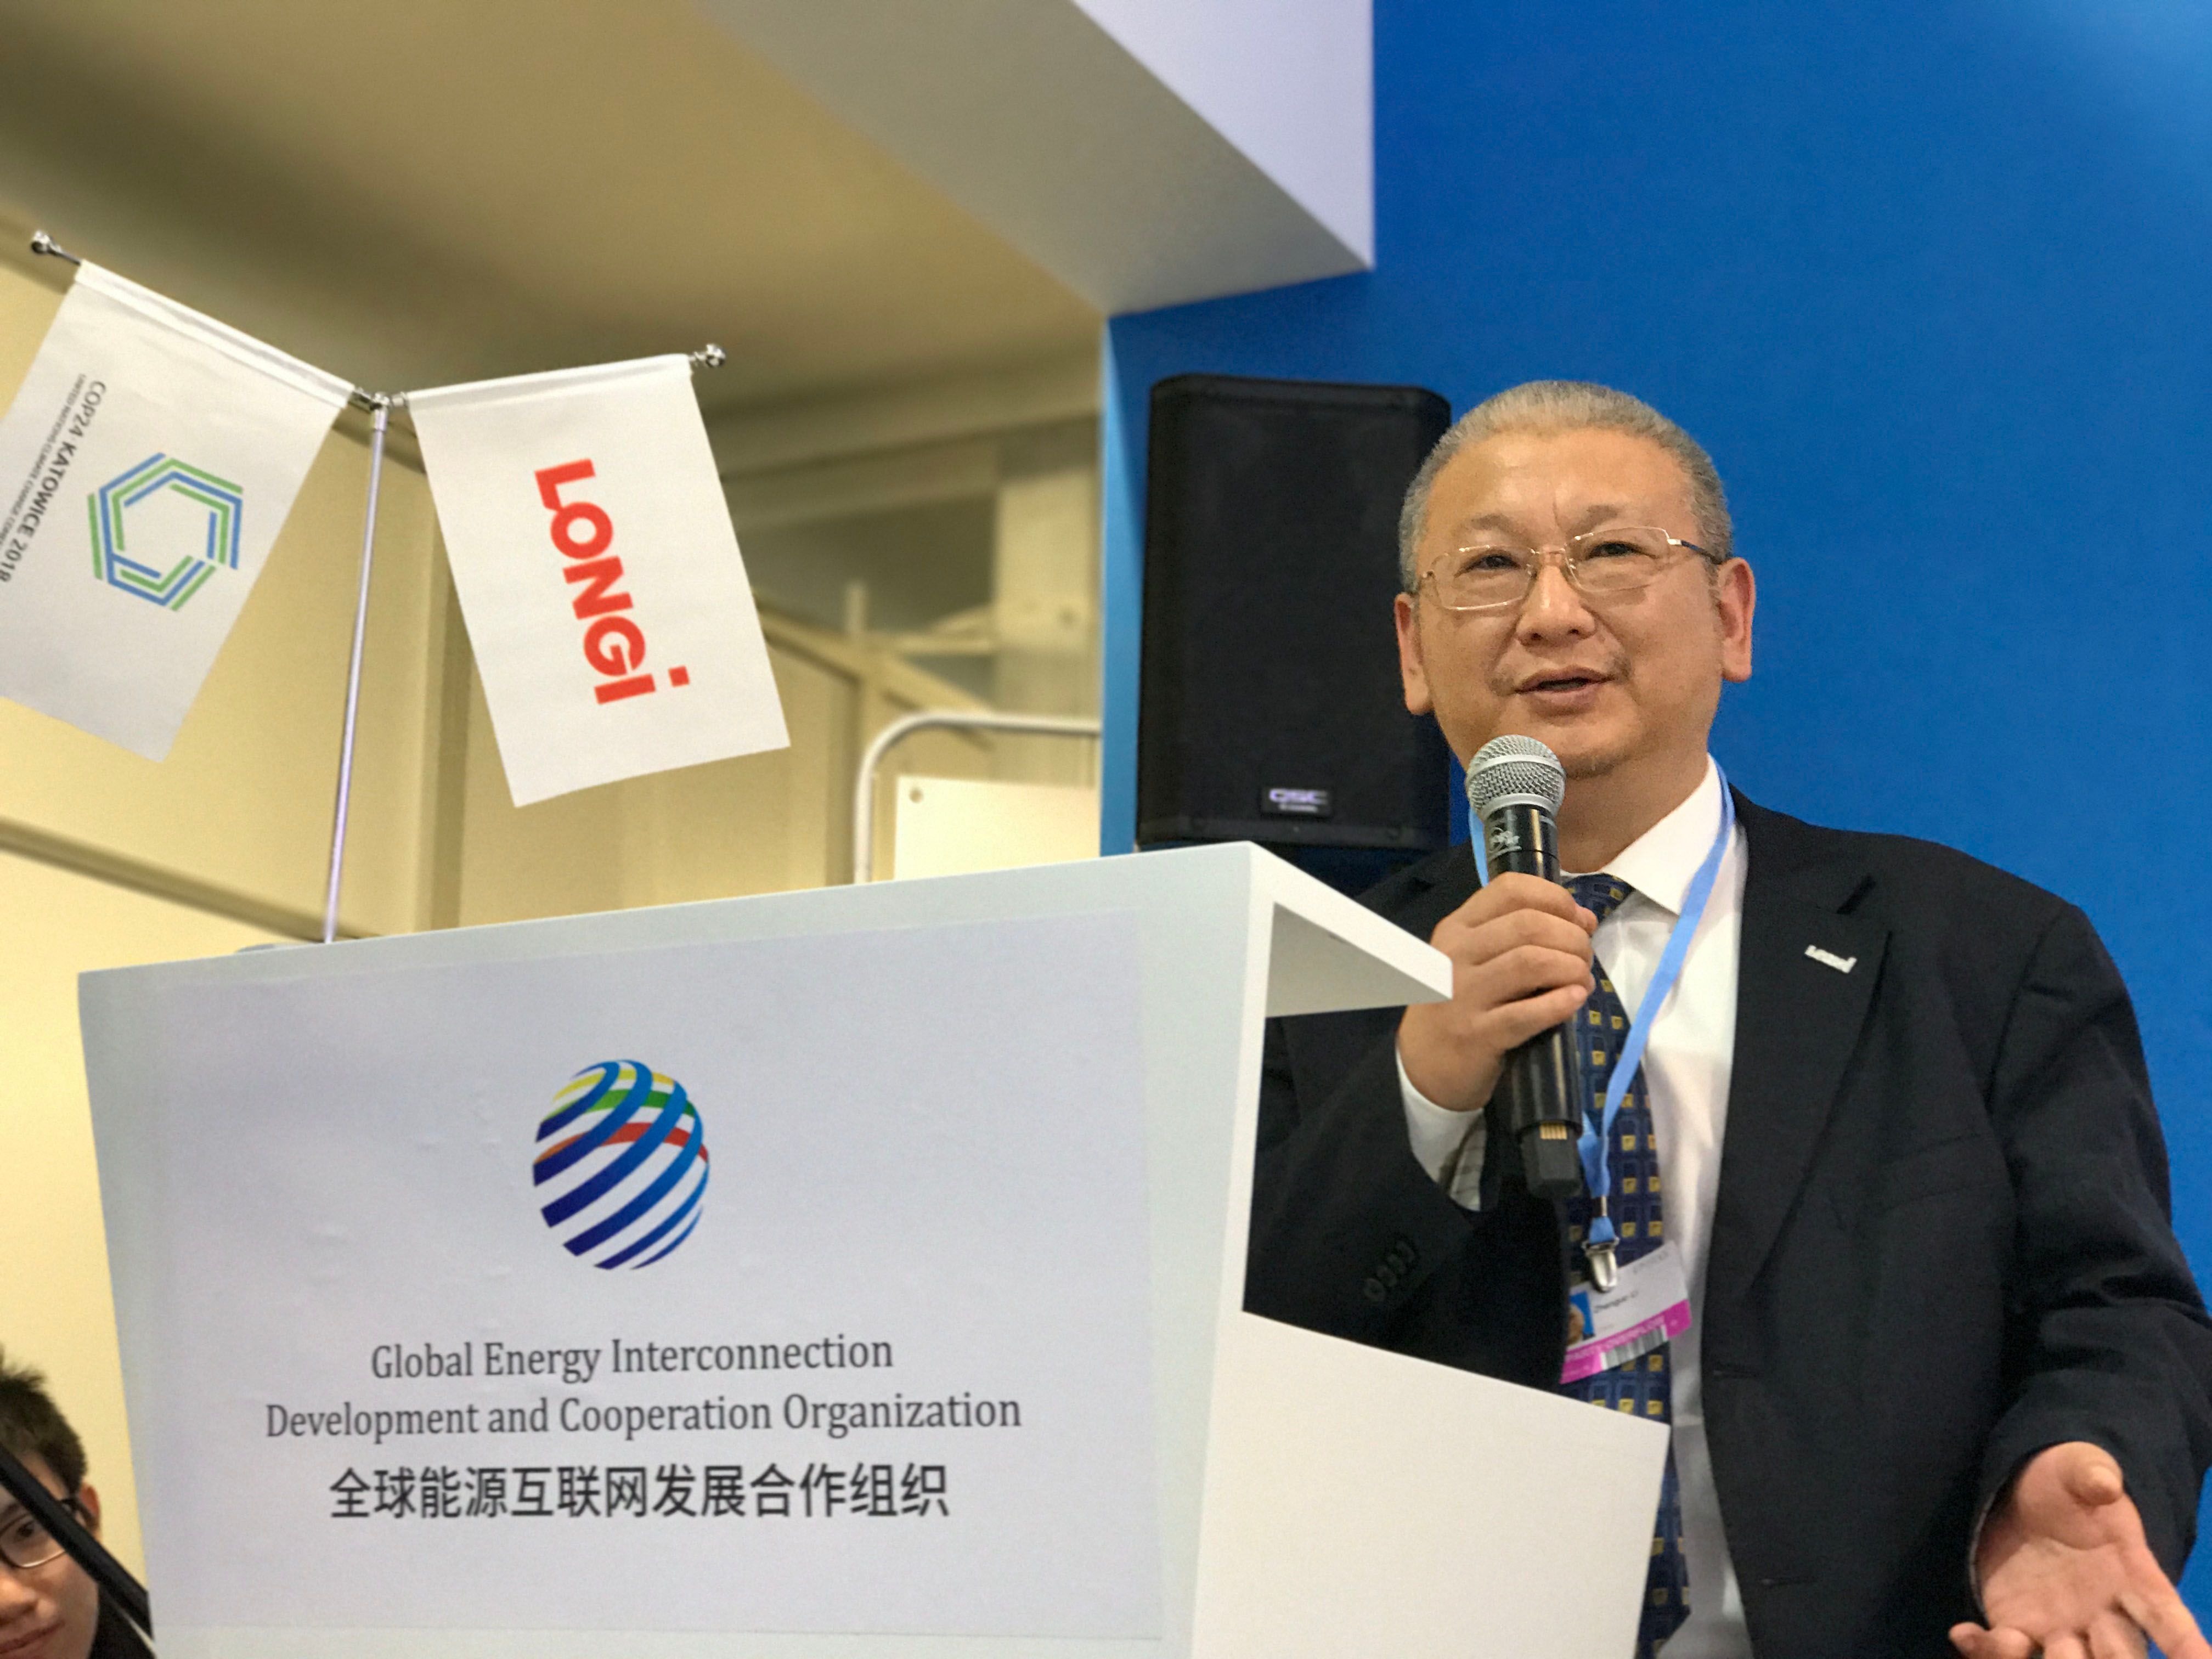 隆基股份创始人、总裁李振国出席第24届联合国气候变化大会并作主旨发言。